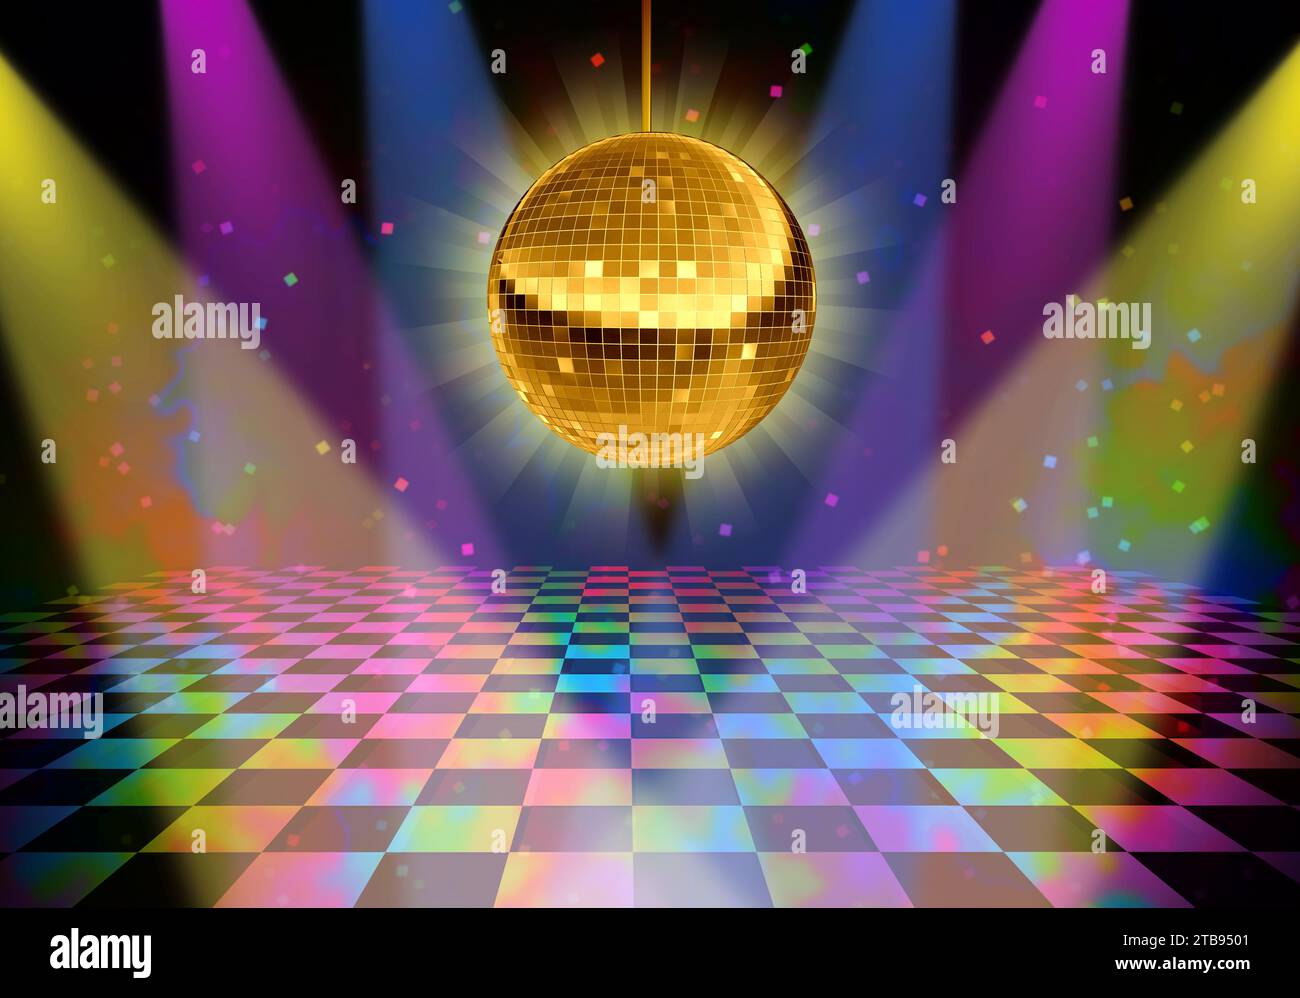 Discothèque nouvel an Dance Floor dans une boîte de nuit avec une boule miroir dorée comme symbole de la fête de danse DJ amusante dans une boîte de nuit ou un bar avec scène lumineuse Banque D'Images